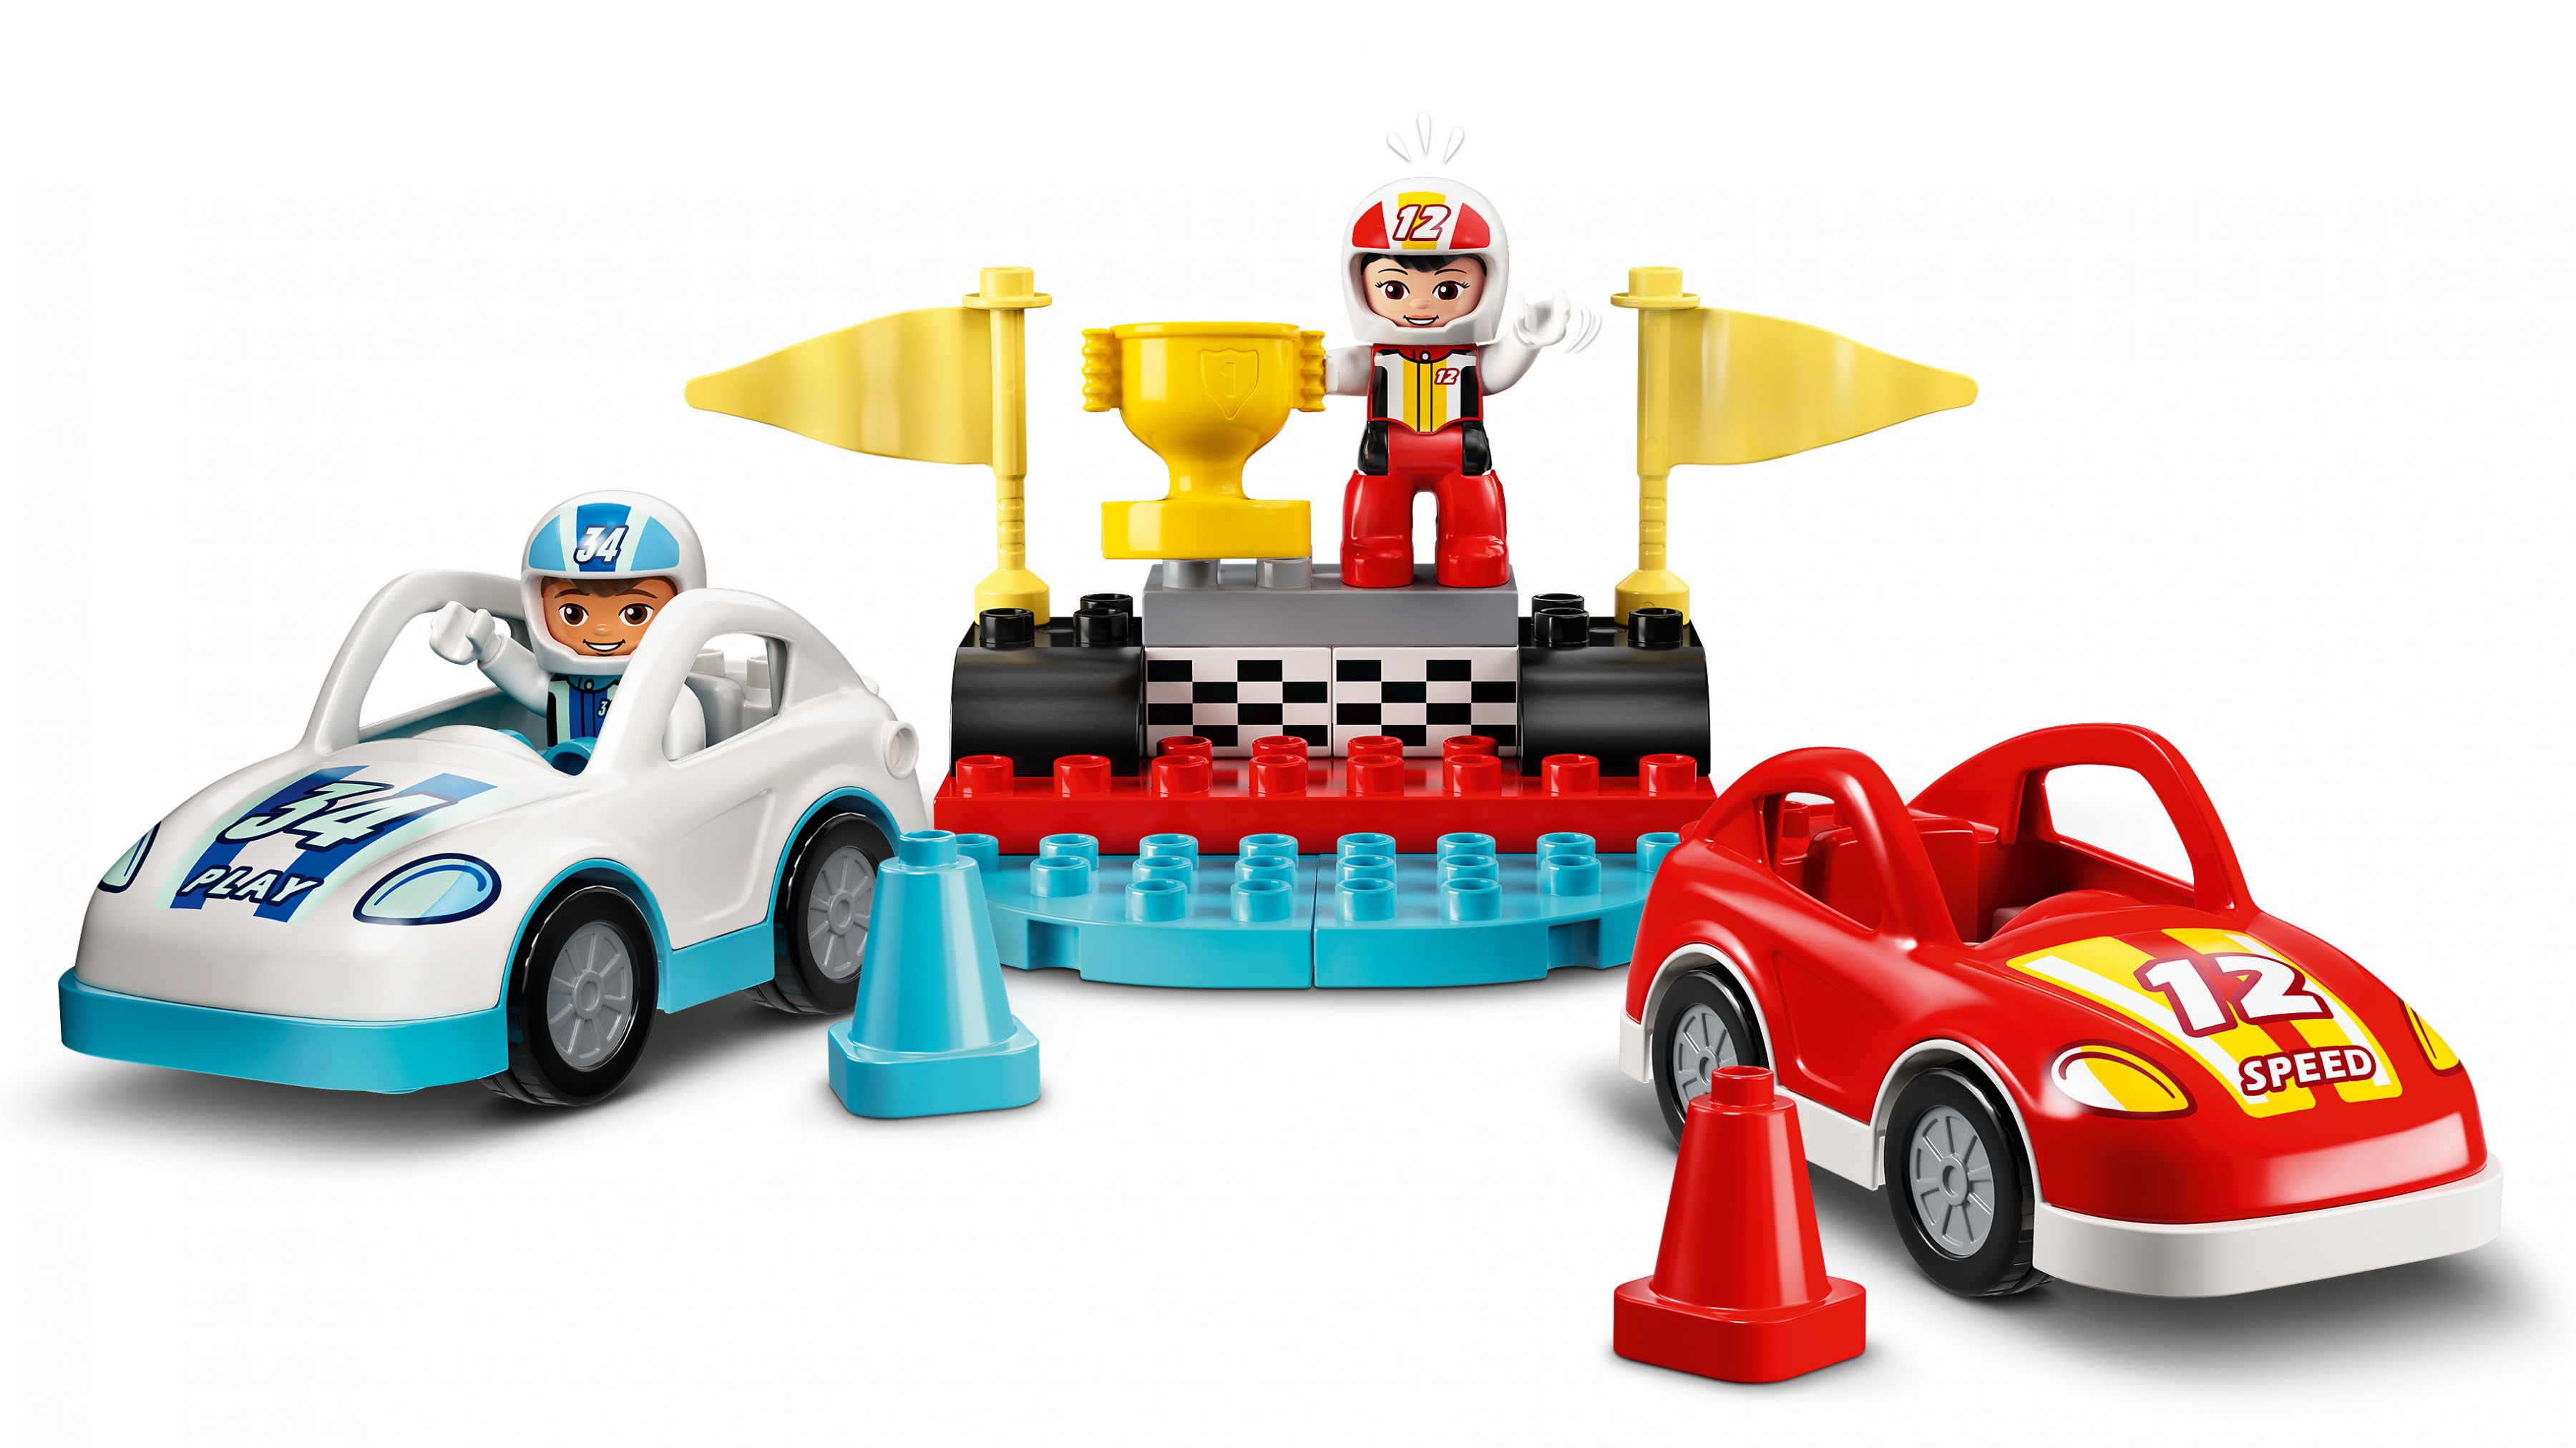 LEGO Duplo 10947 Rennwagen LEGO_10947_web_sec04_nobg.jpg